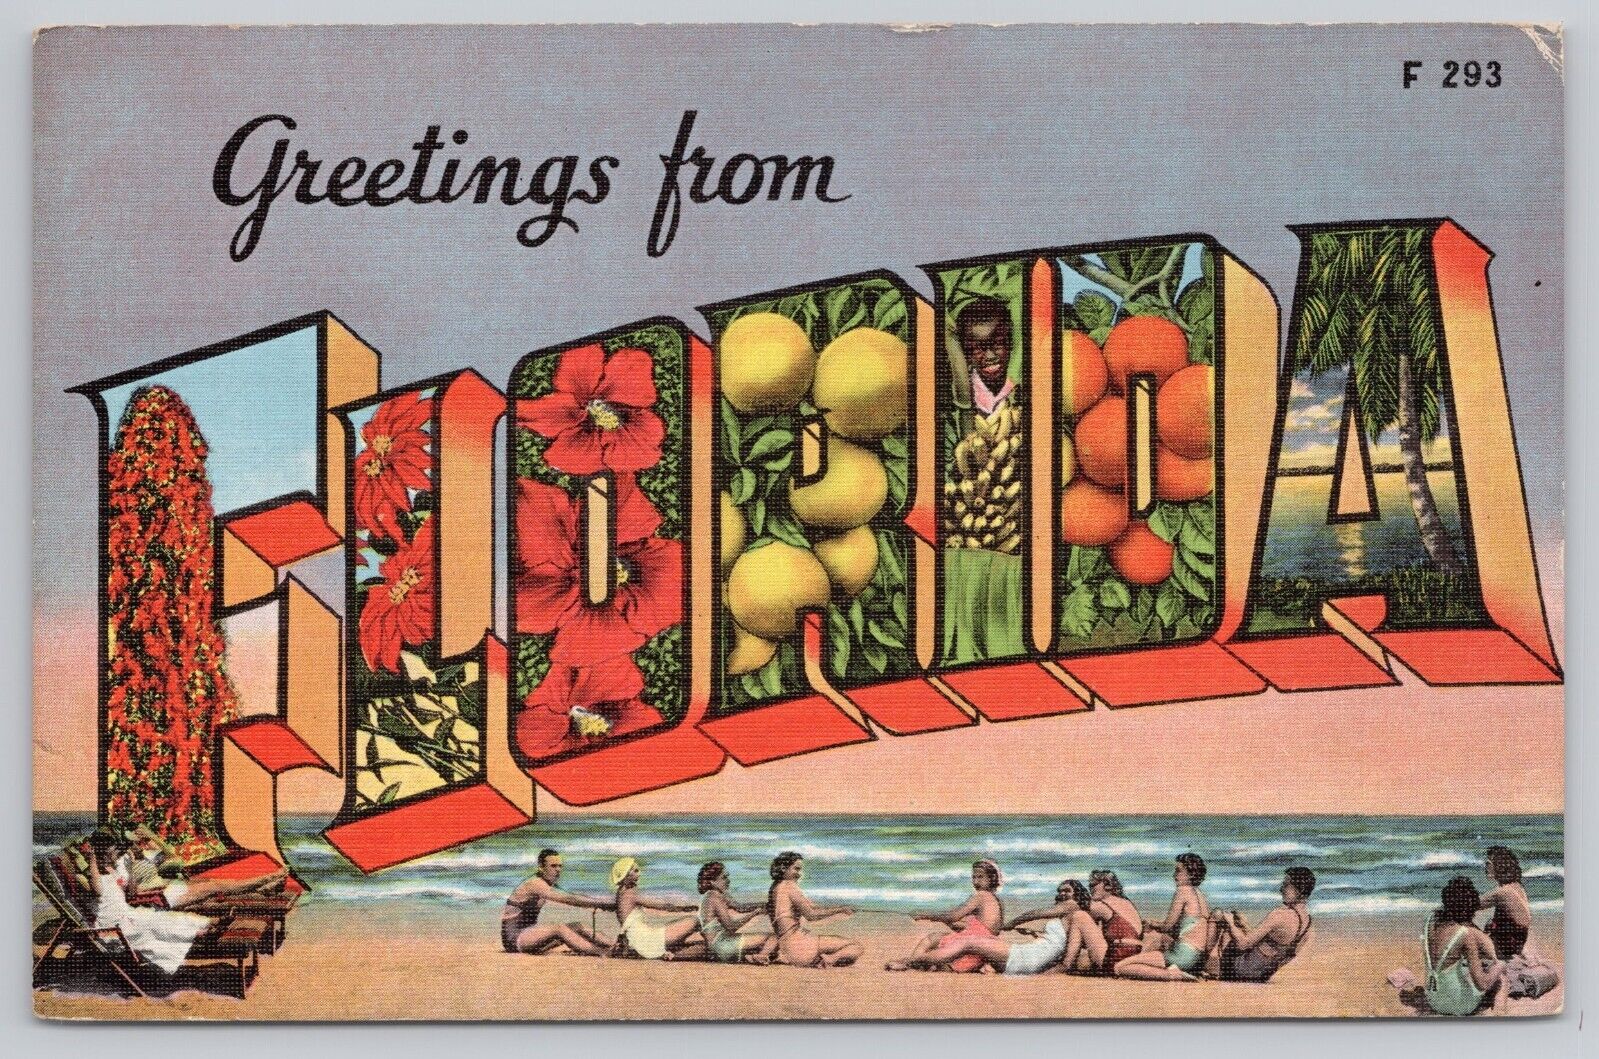 Florida, Large Letter Greetings, Beach Sunbathers, Vintage Postcard